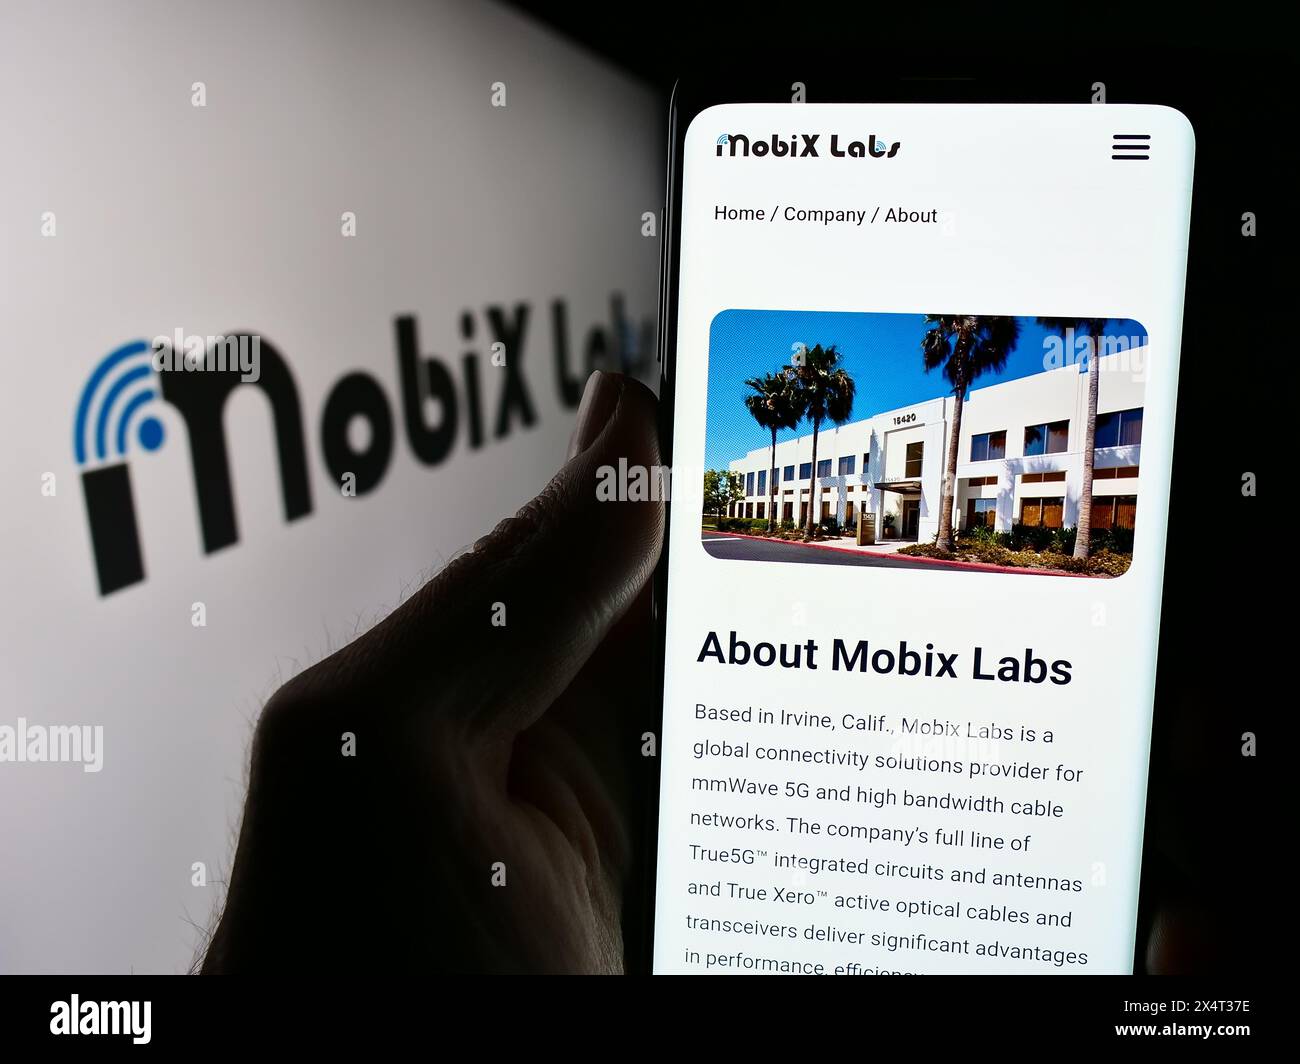 Personne tenant un smartphone avec la page Web de la société américaine de semi-conducteurs fabless Mobix Labs Inc devant le logo. Concentrez-vous sur le centre de l'écran du téléphone. Banque D'Images